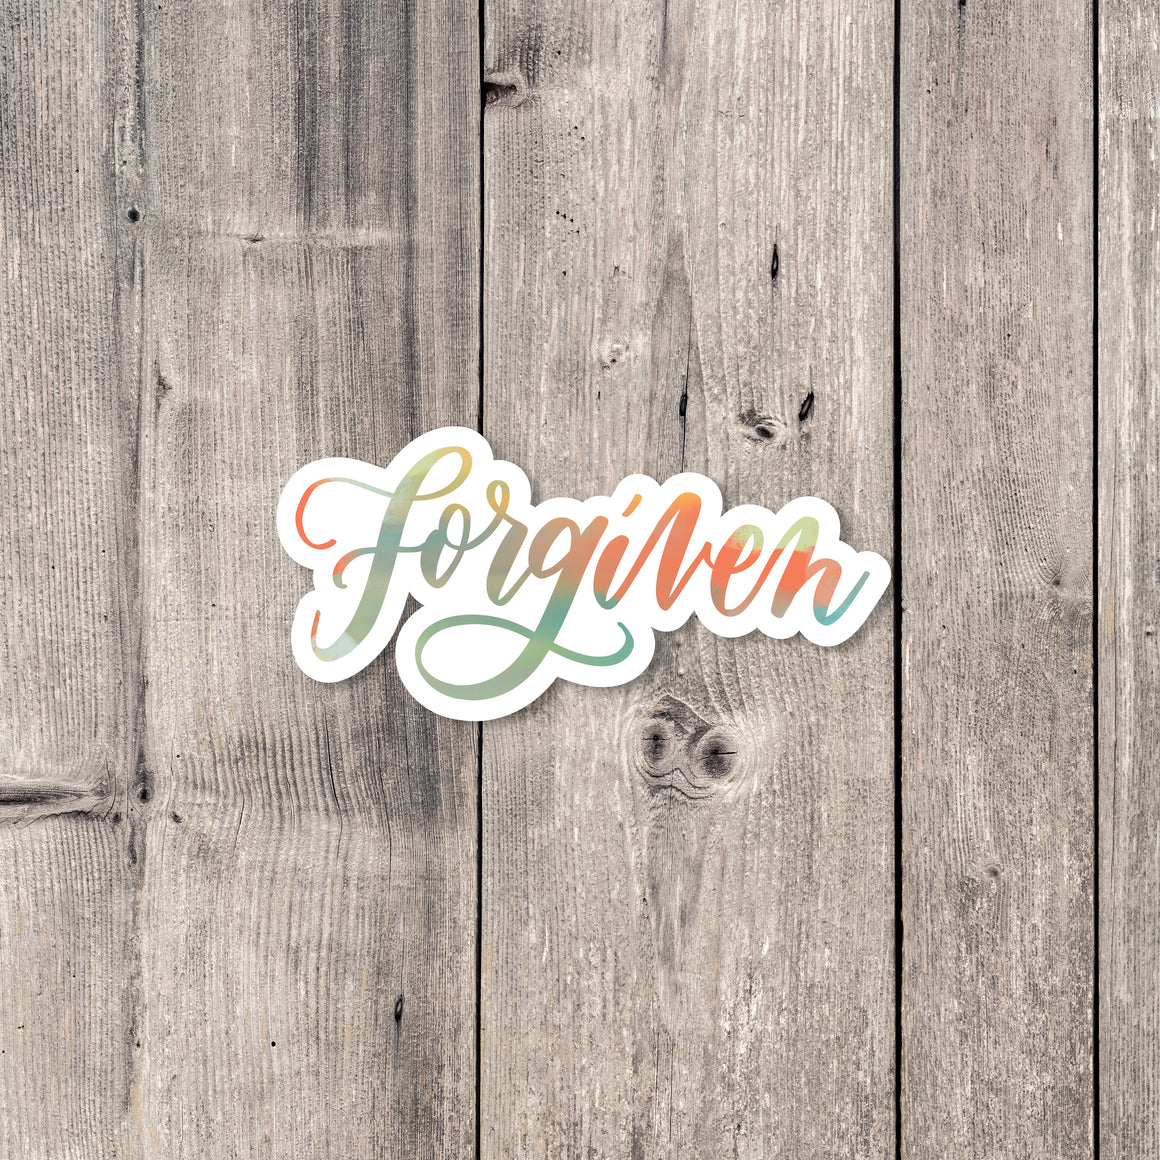 "Forgiven" sticker